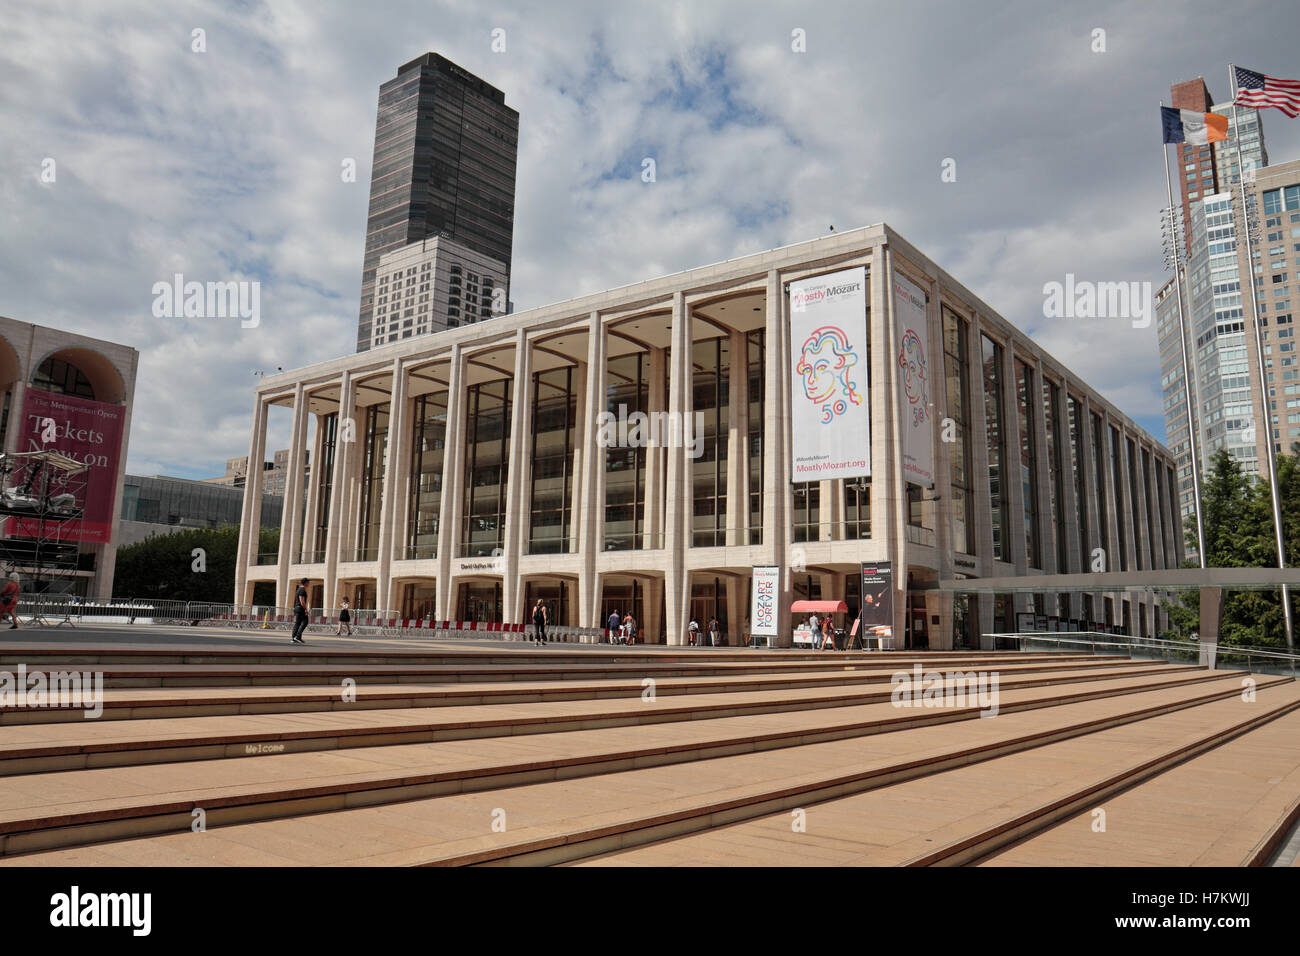 David Geffen Hall, Teil des Lincoln Center for Performing Arts Complex, Manhattan, New York City, Vereinigte Staaten. Stockfoto